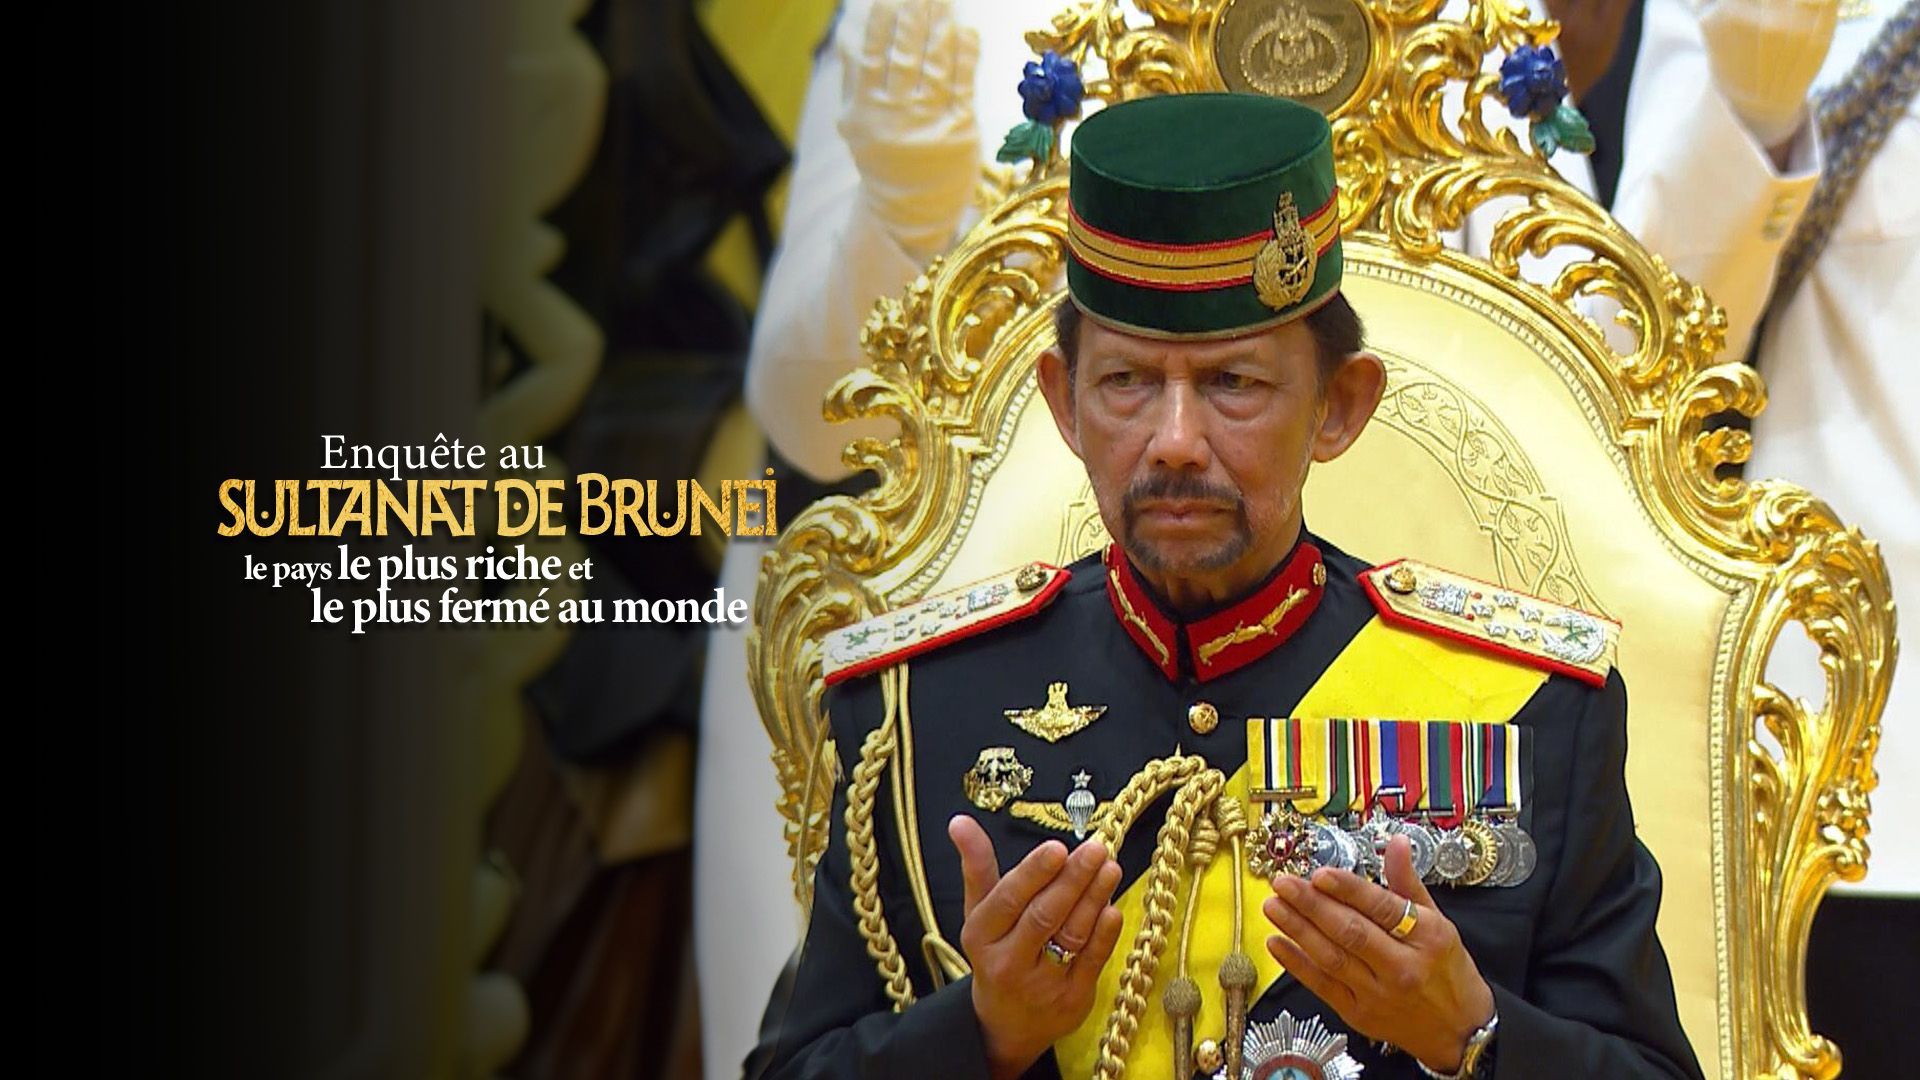 Enquête au sultanat de Brunei